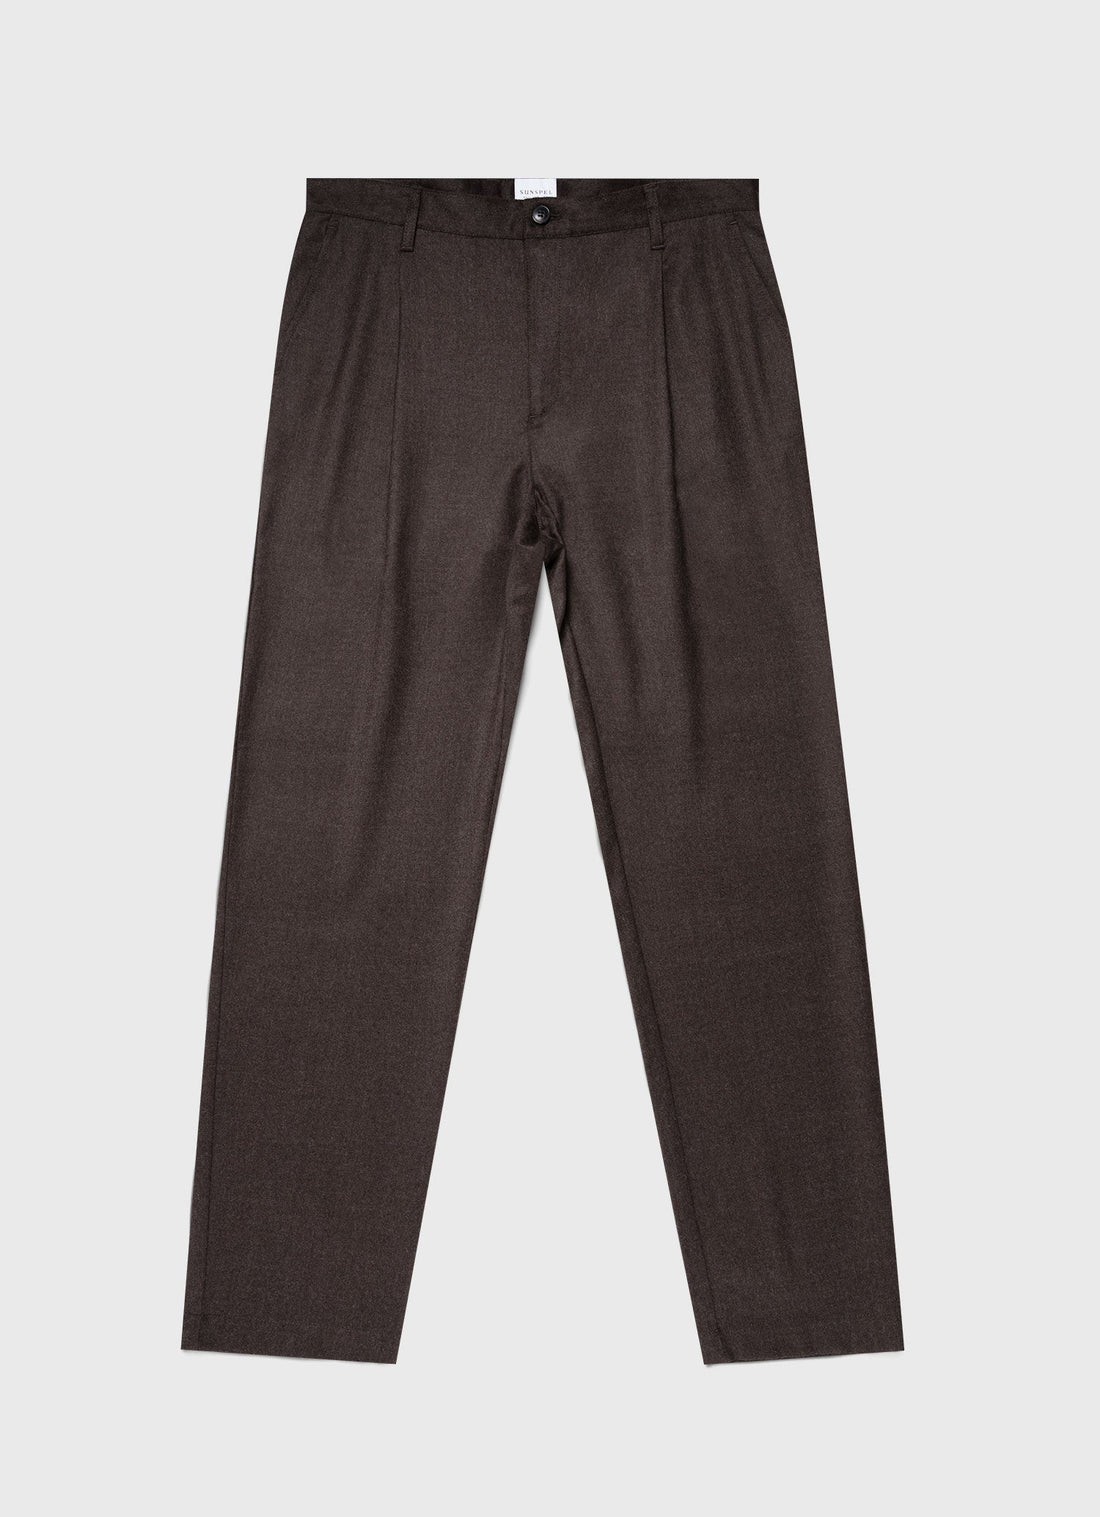 Men's Pleated Wool Flannel Trouser in Dark Brown Melange